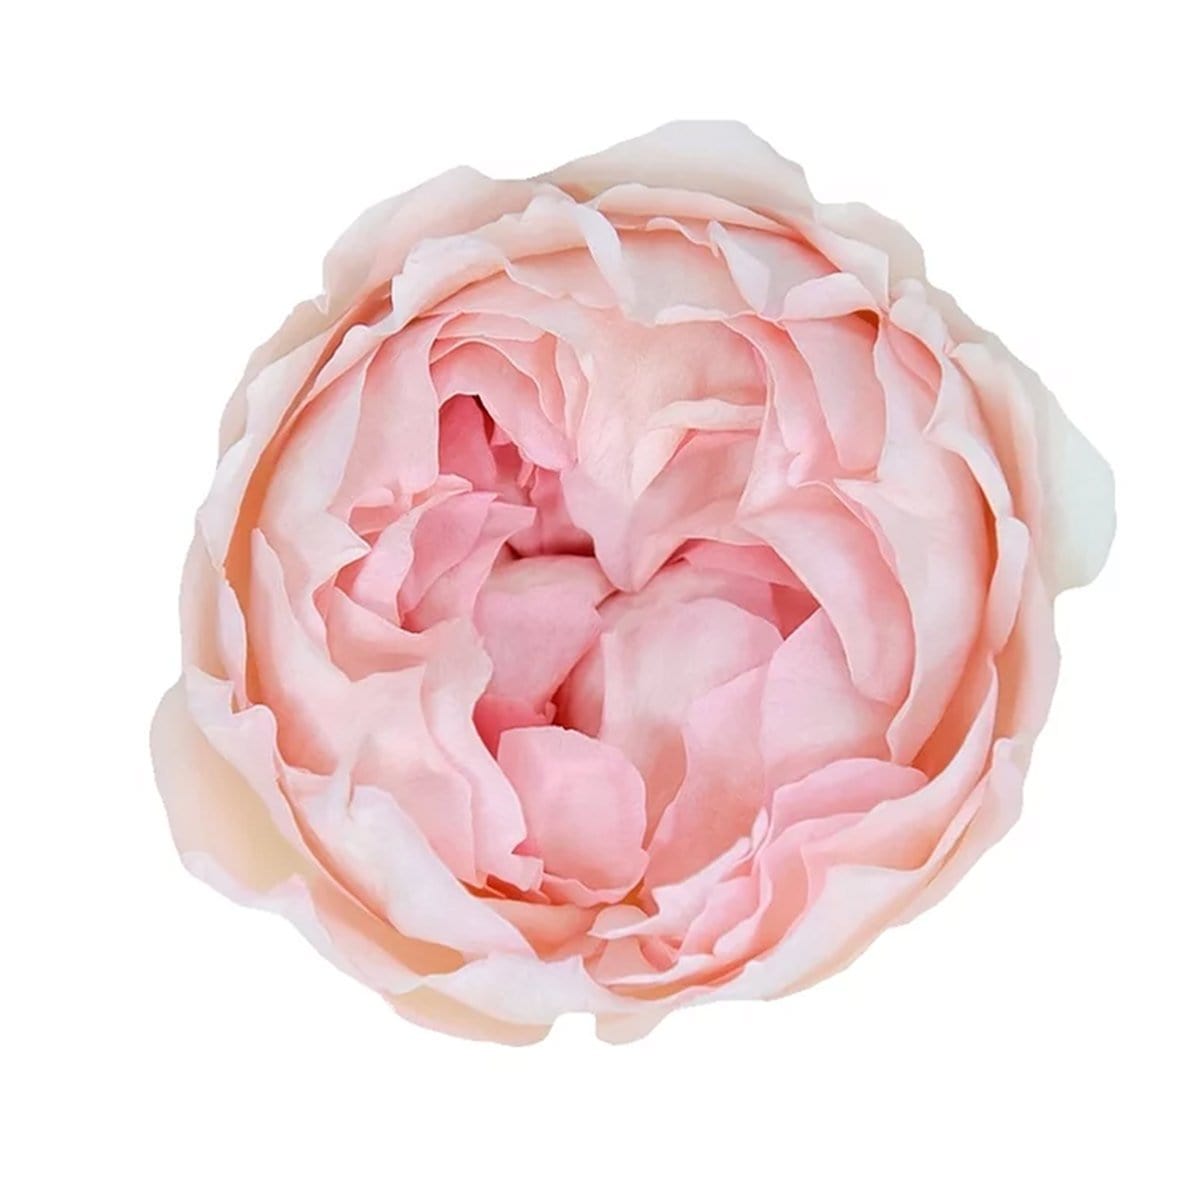 Quicksand Novelty Rose - Cream Beige Blush